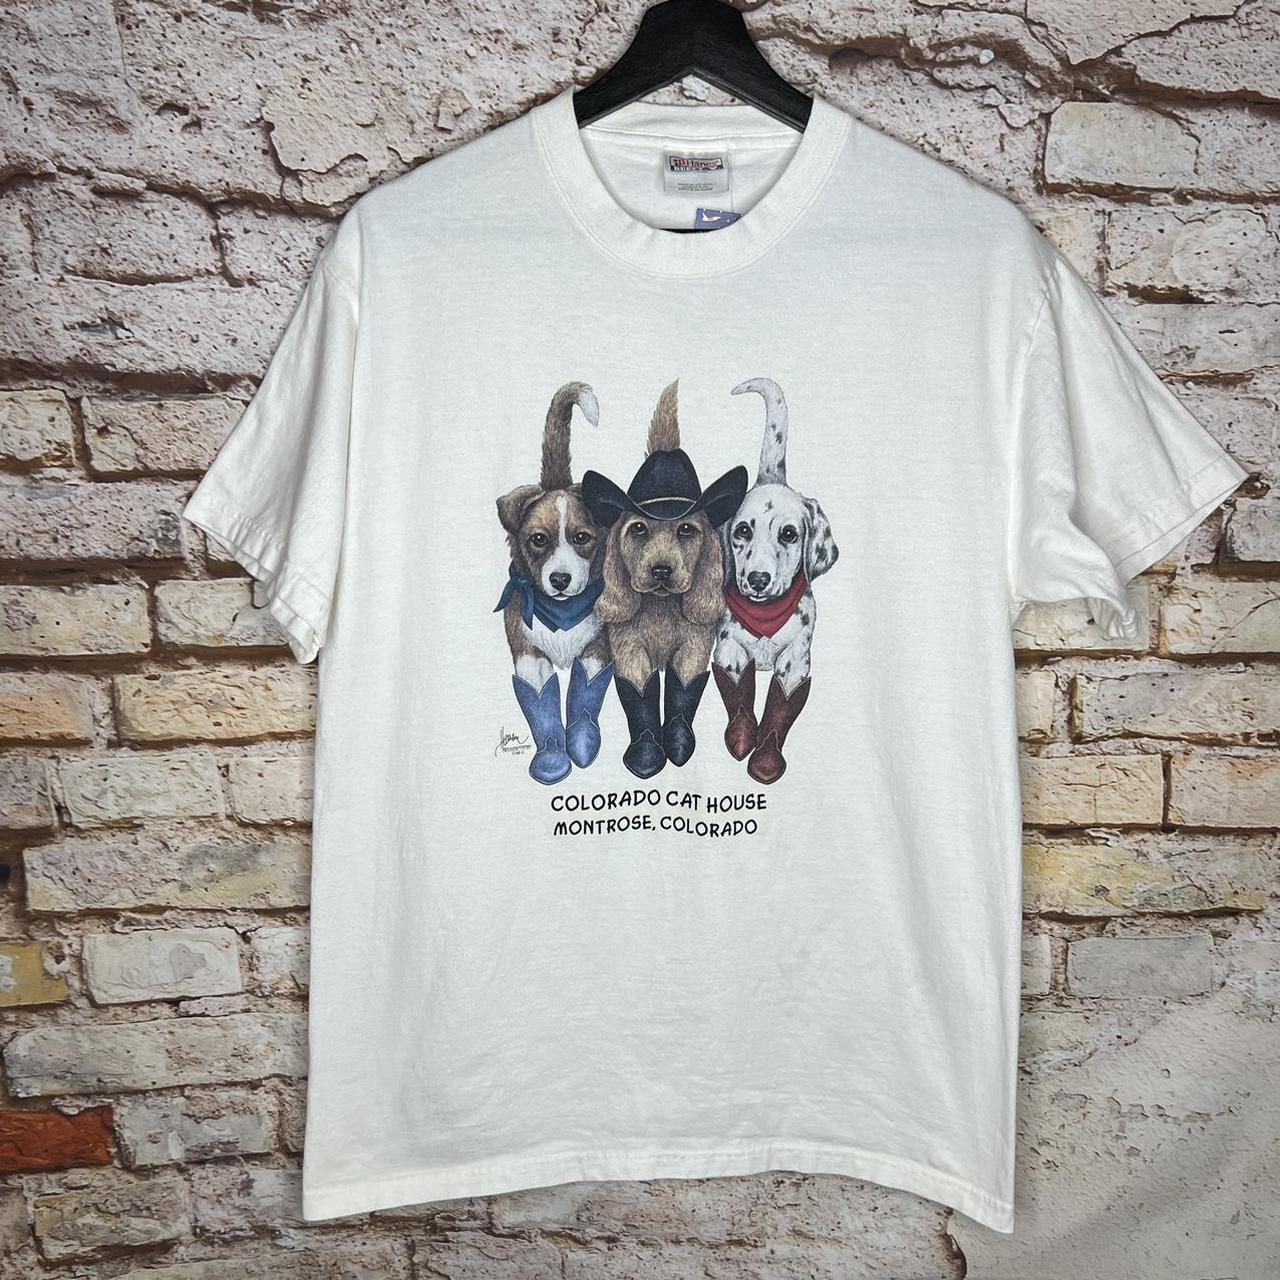 Vintage Cowboy Cute Puppy Dogs T Shirt 00s Size: M... - Depop